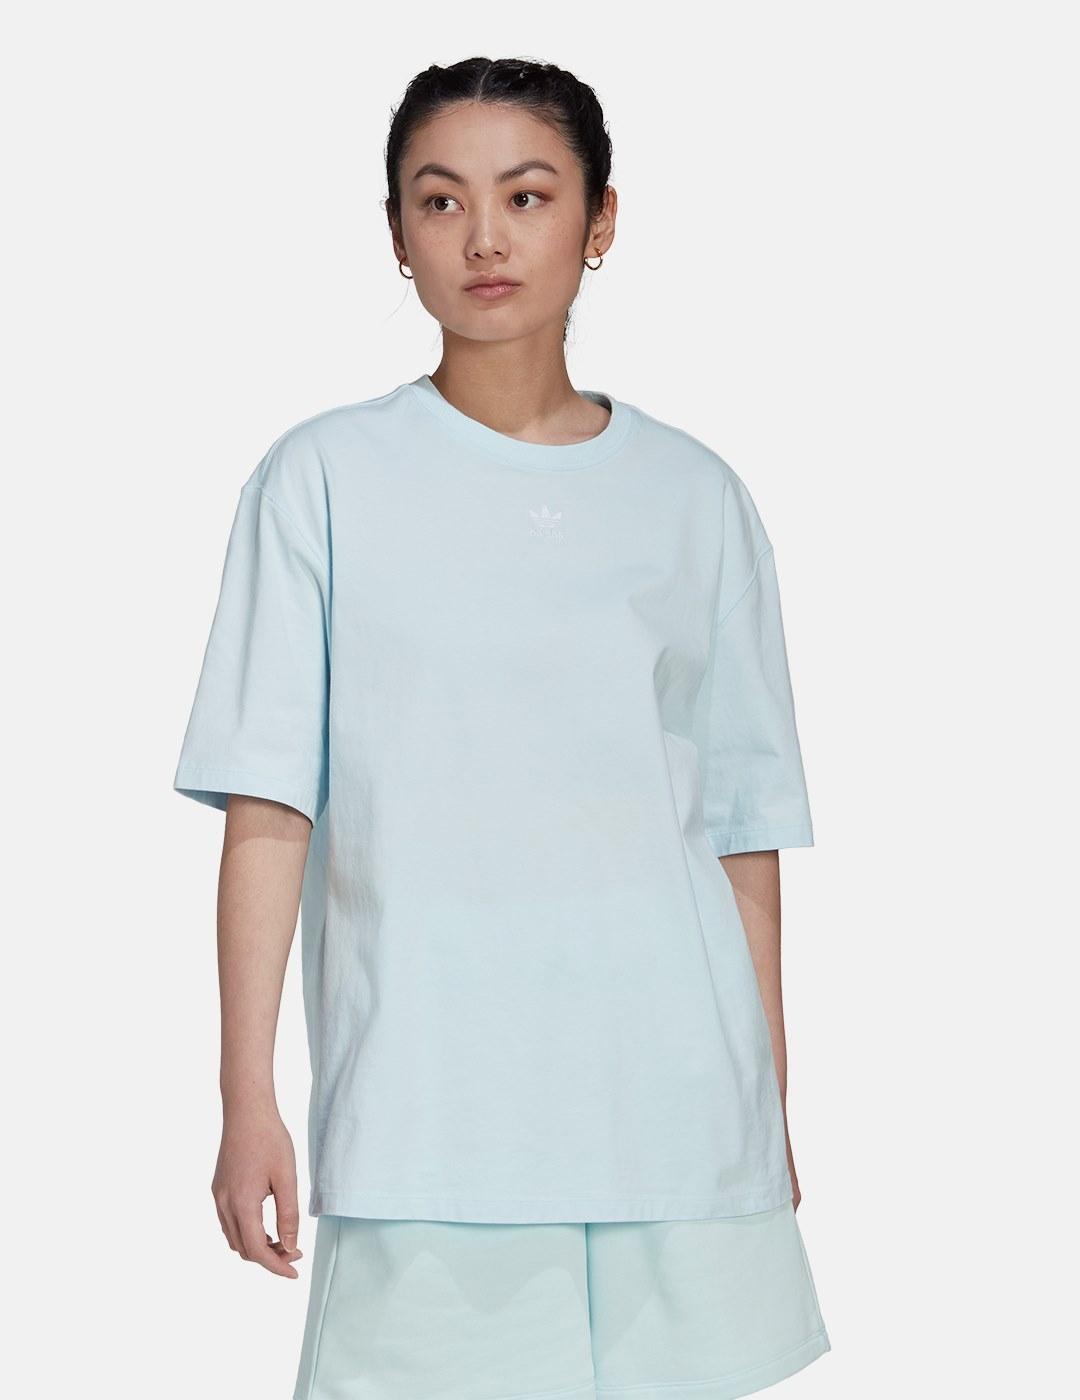 Camiseta adidas Loungewear Adicolor Essentials Azul